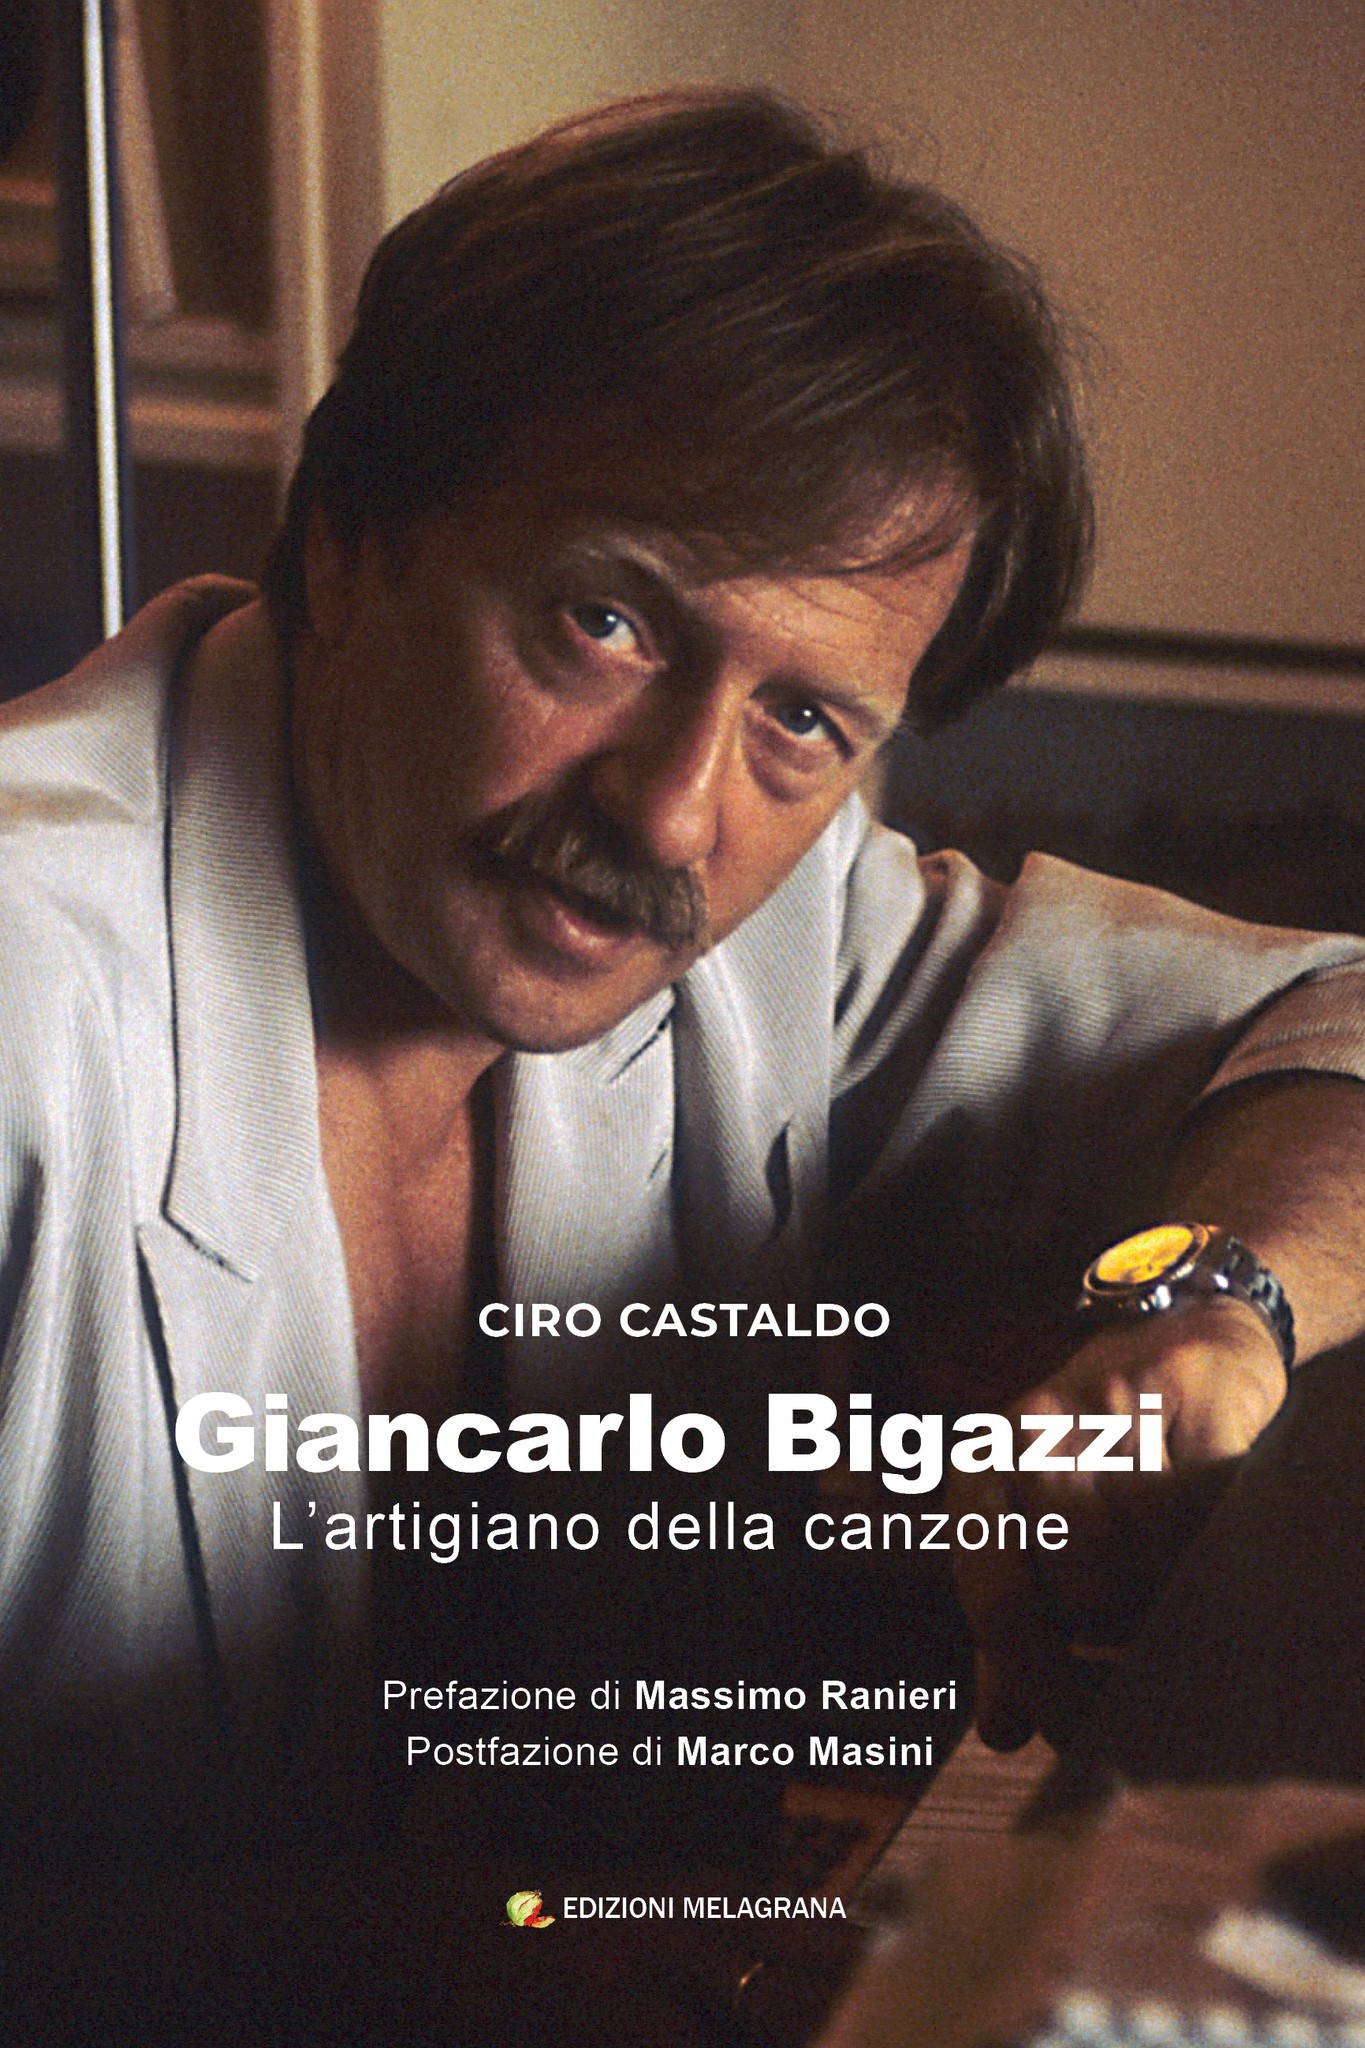 GIANCARLO BIGAZZI, L'ARTIGIANO DELLA CANZONE - CIRO CASTALDO